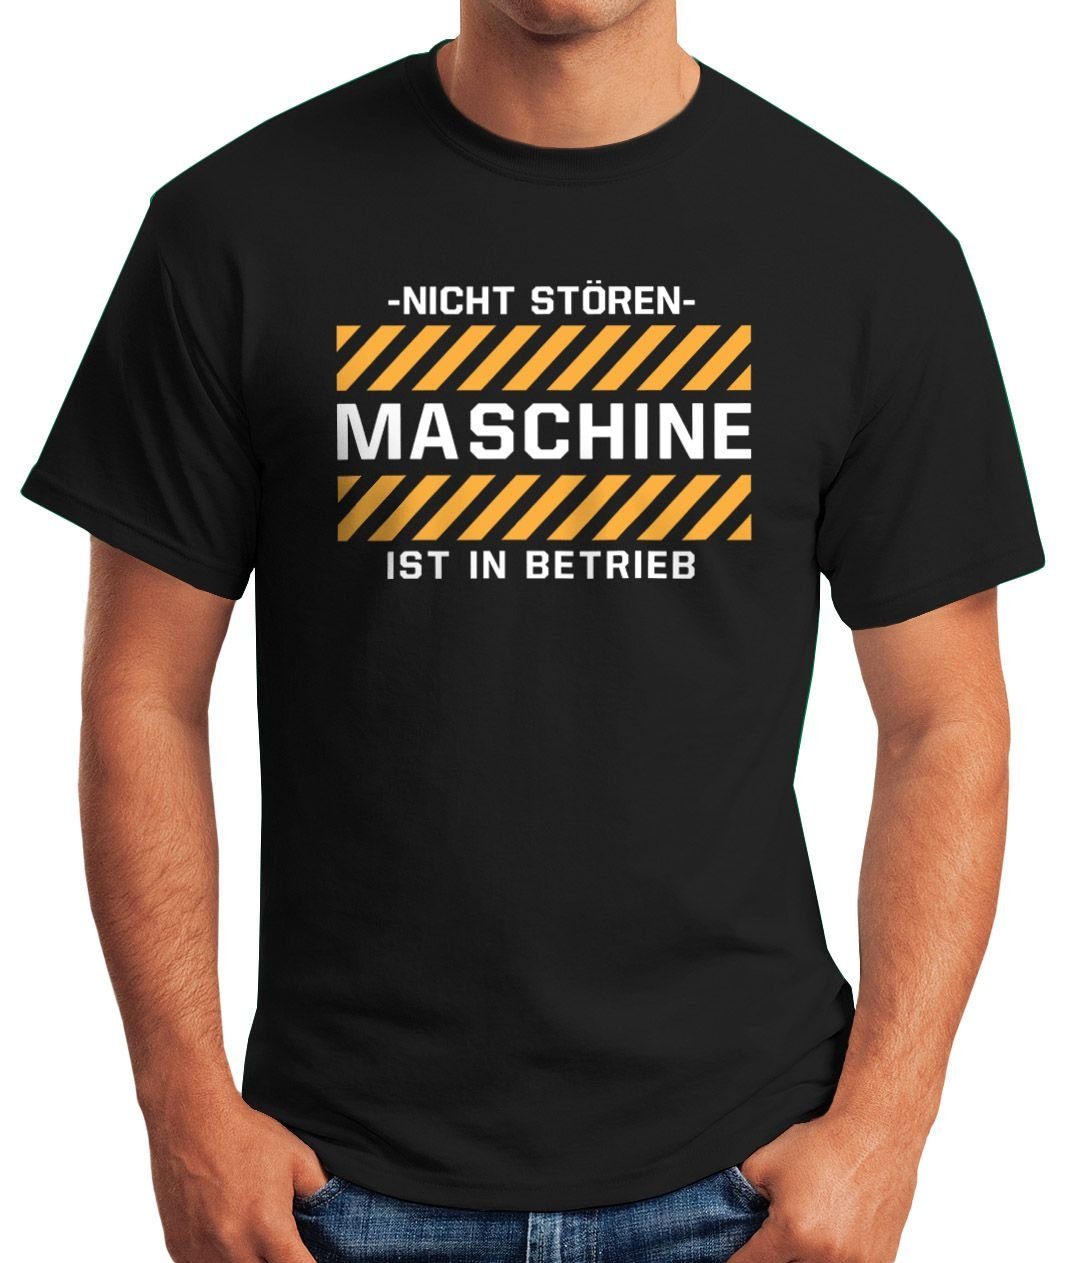 Maschine MoonWorks Print-Shirt -Nicht T-Shirt stören- mit Moonworks® Betrieb Spruch ist Fun-Shirt in lustiges Herren Print